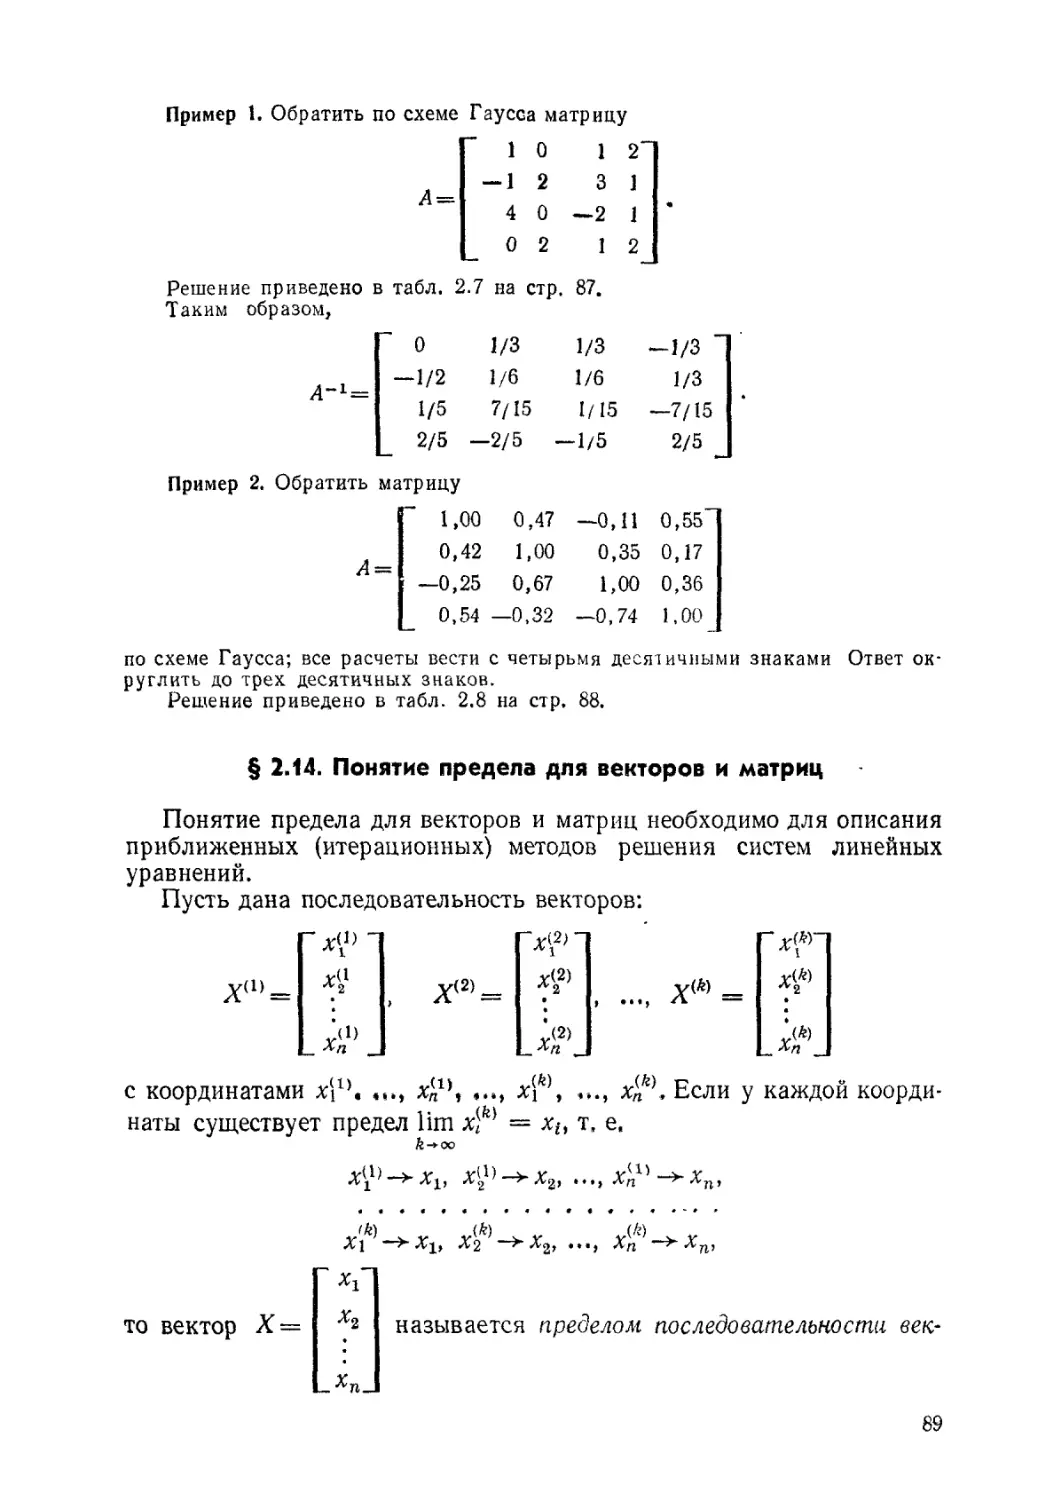 § 2.14. Понятие предела для векторов и матриц